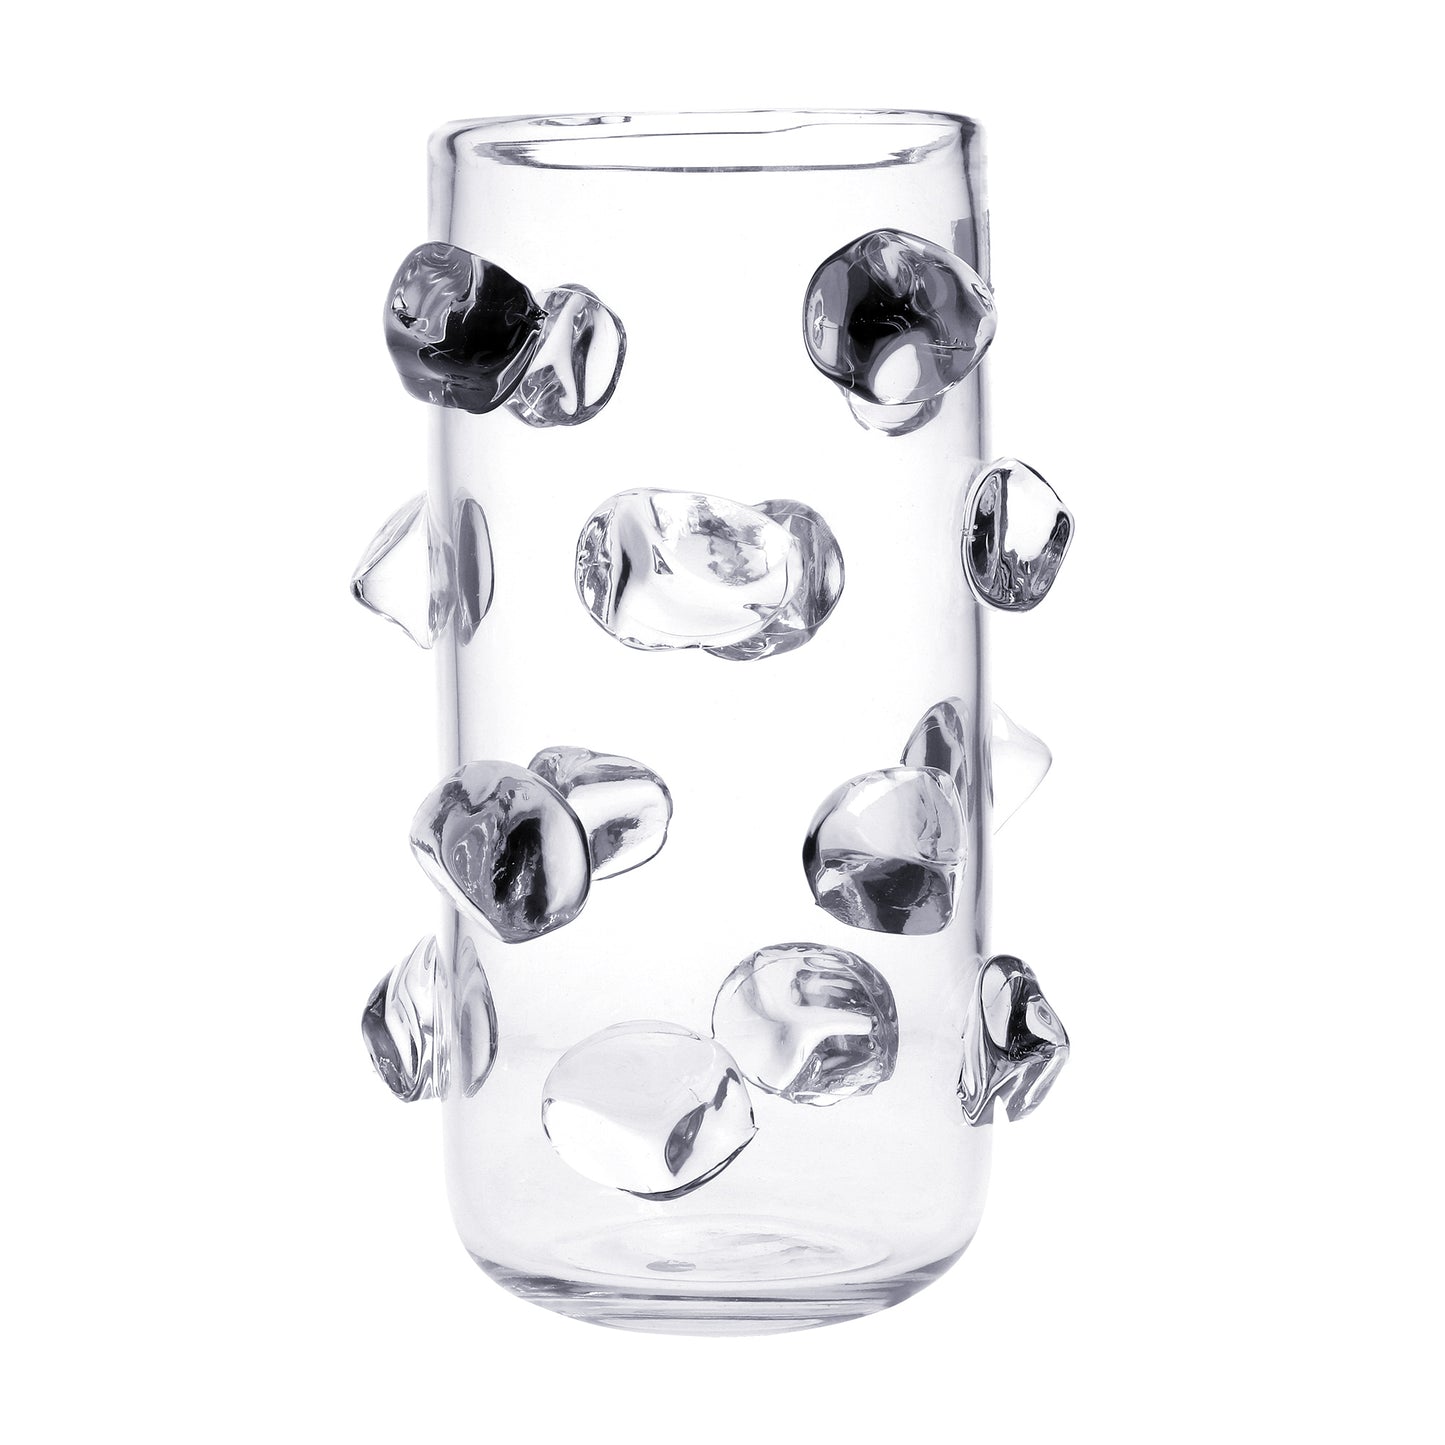 Vaso portafiori in vetro trasparente con applicazioni a forma di sassi sempre in vetro trasparente. Dimensioni: Ø 20 ; h 32,5 cm, peso: 3,5 kg. In negozio e online su tuttochic.it